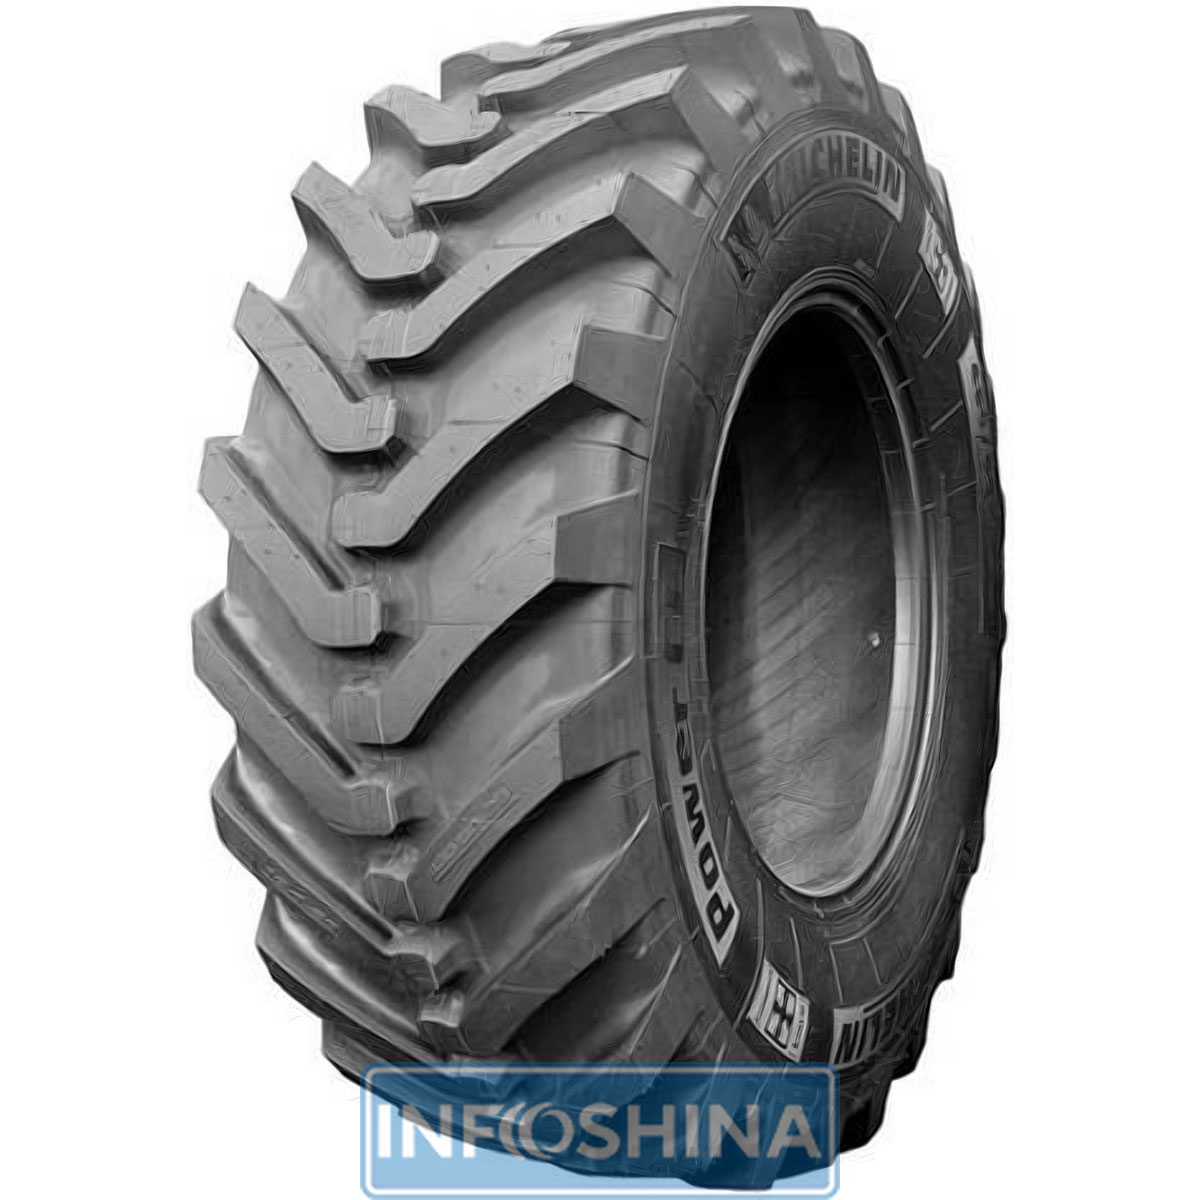 Купить шины Michelin Power CL (универсальная) 400/70-20 149A8